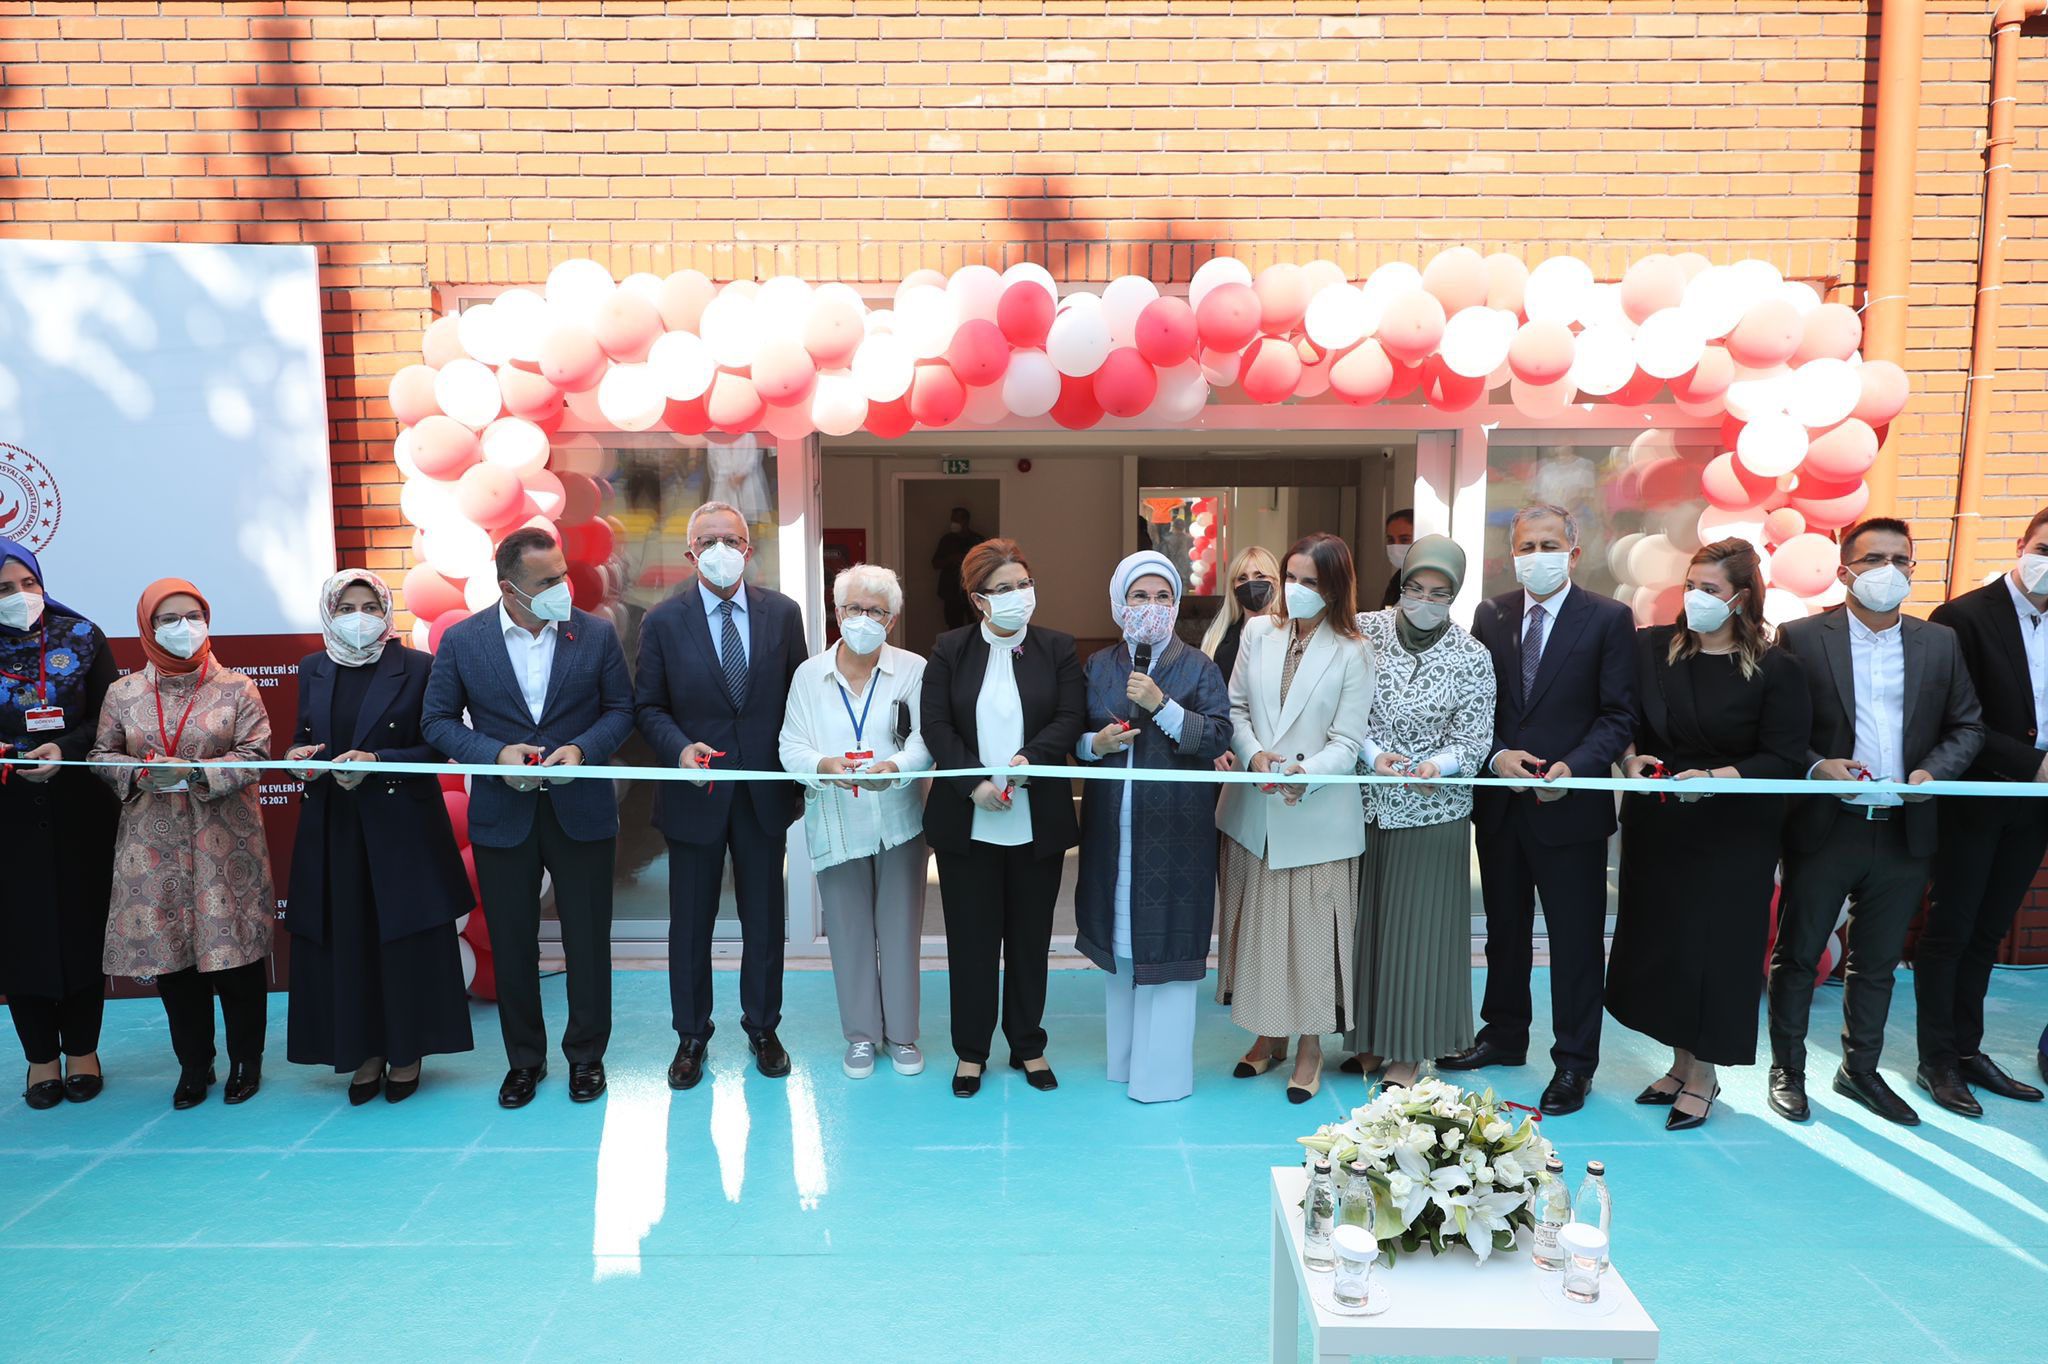 Emine Erdoğan Kasımpaşa Oya Kayacık Çocuk Evleri Sitesi'nin açılışına katıldı: "Hiçbir çocuğu yalnız bırakmamak temel vazifemizdir”